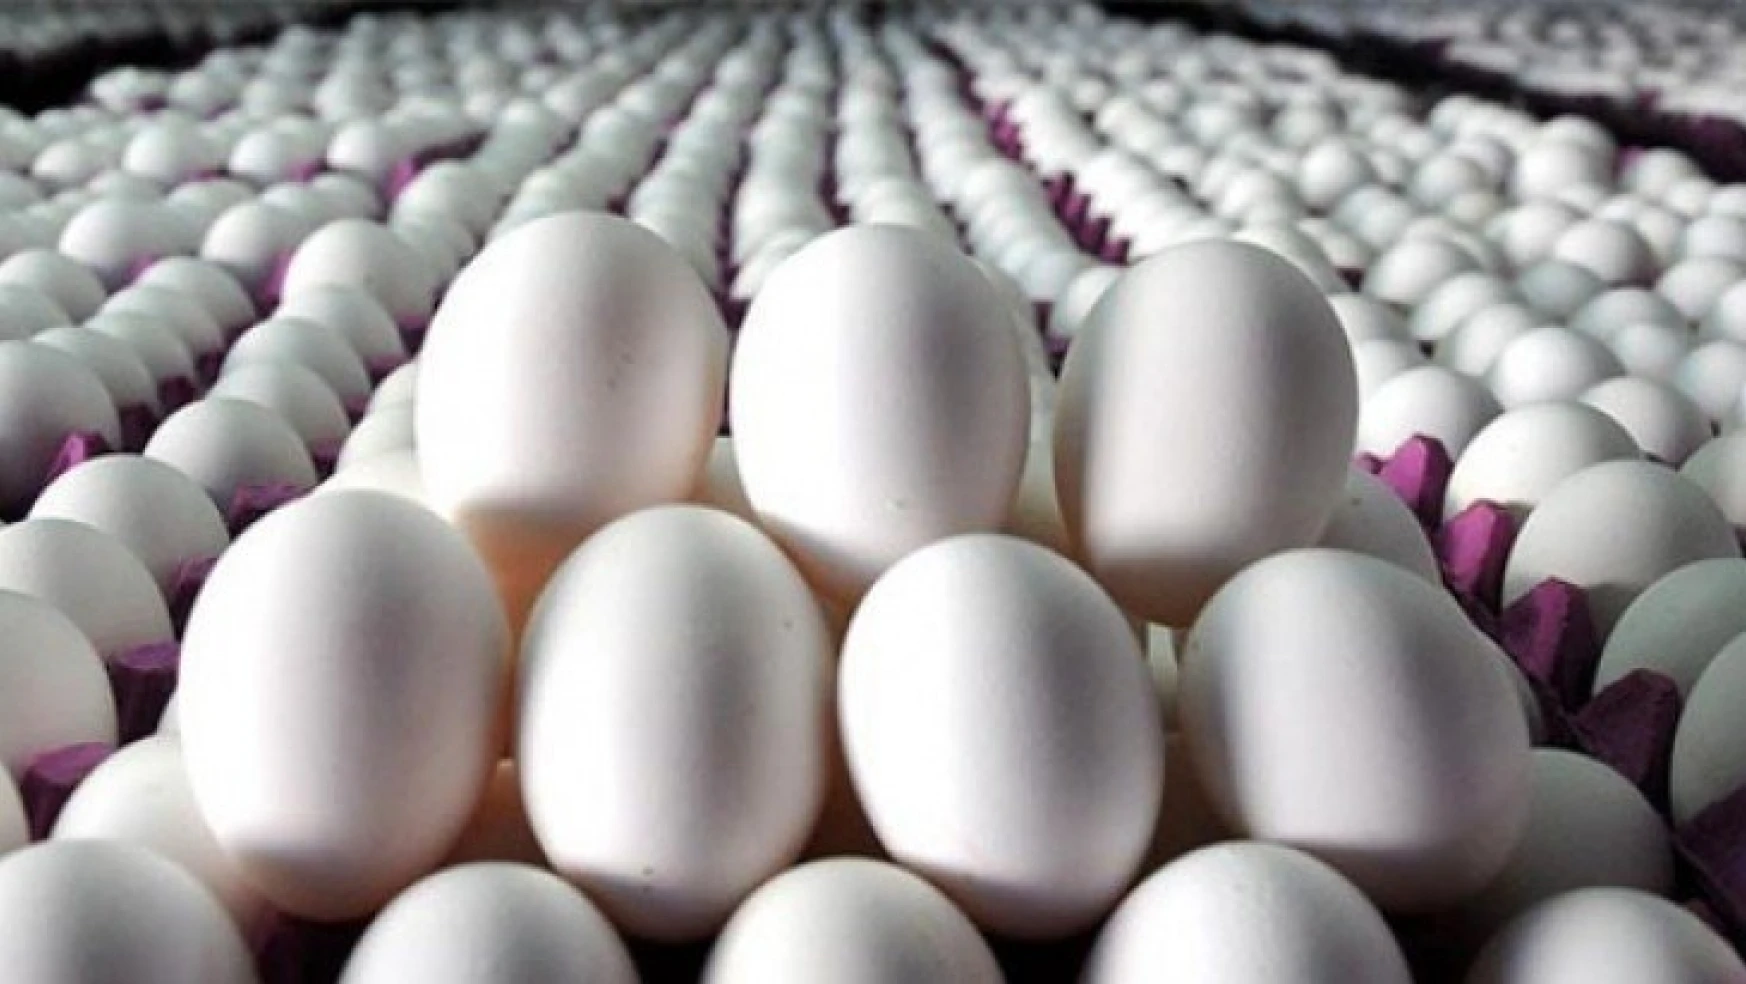 Yumurtada yeni pazarlar bulunmalı…